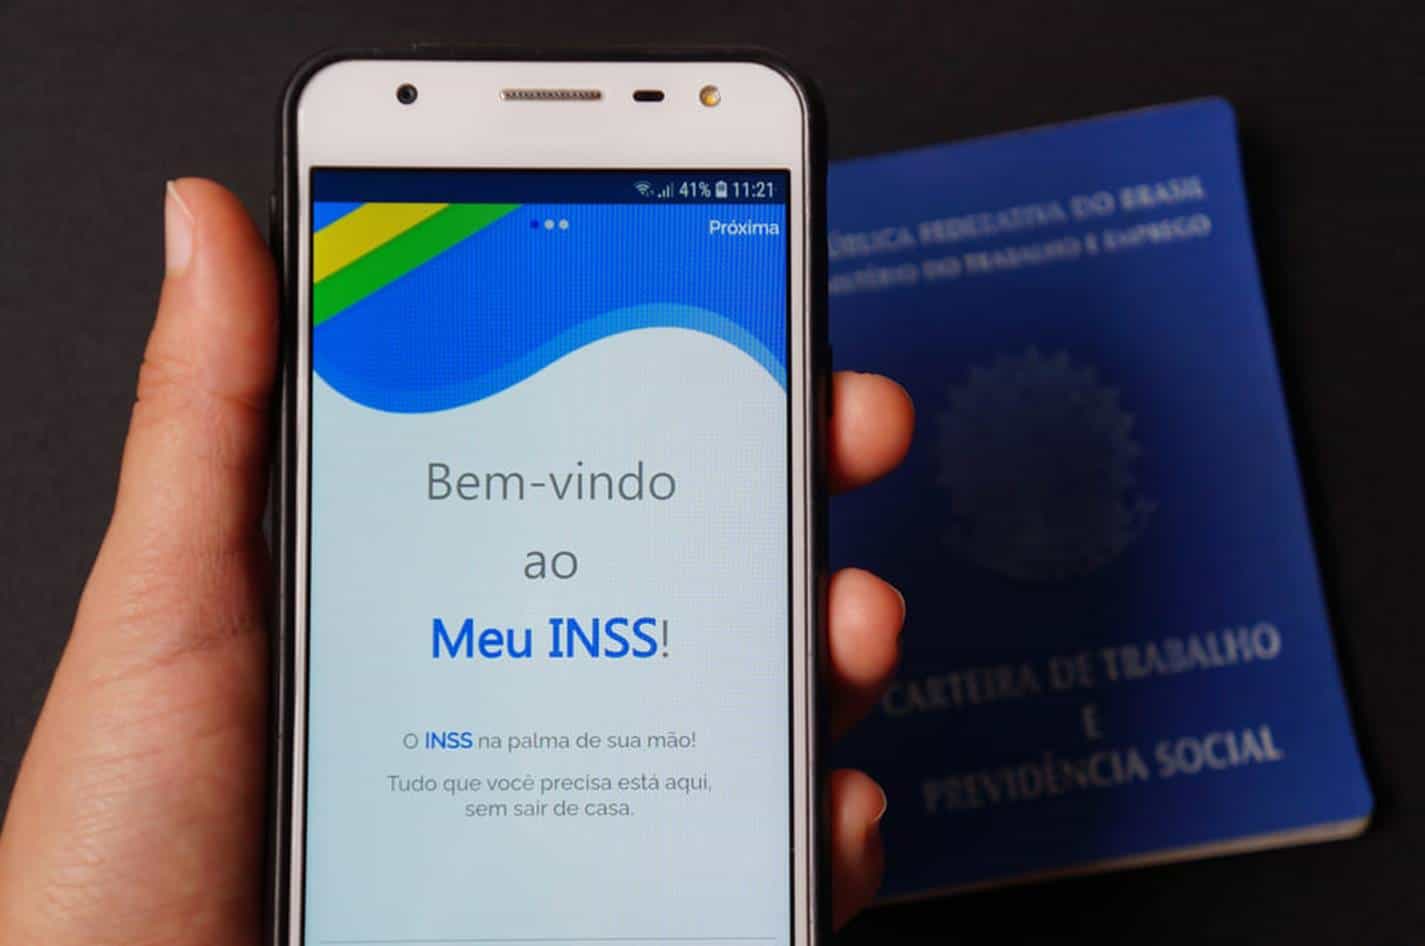 MEU INSS oferece mais de 90 serviços digitais sem precisar sair de casa